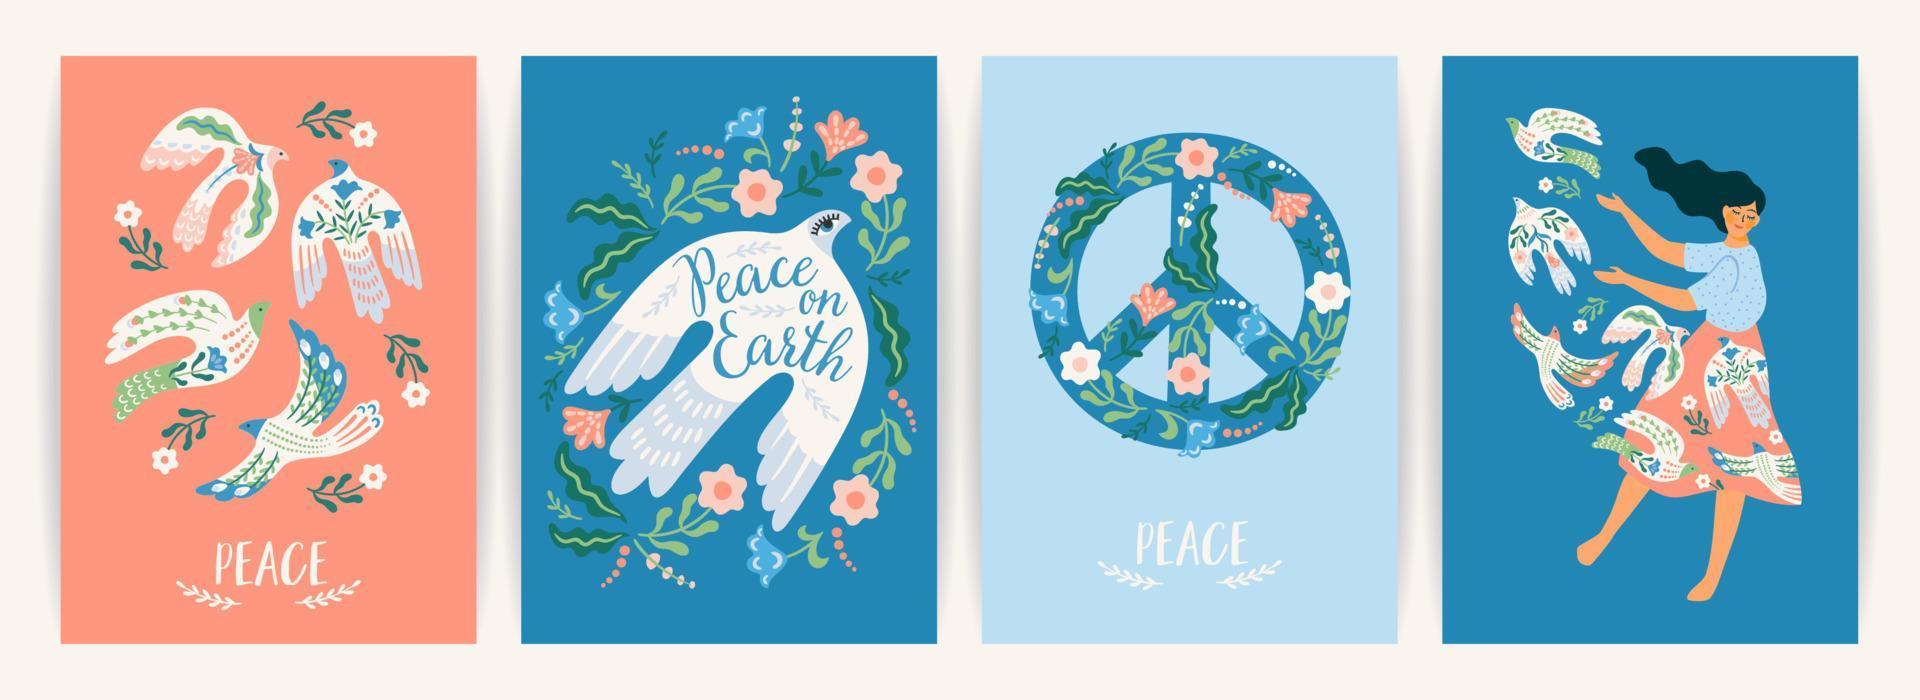 vrede op aarde. vrouw en vredesduif. vectorreeks. illustratie voor kaart, poster, flyer en andere vector